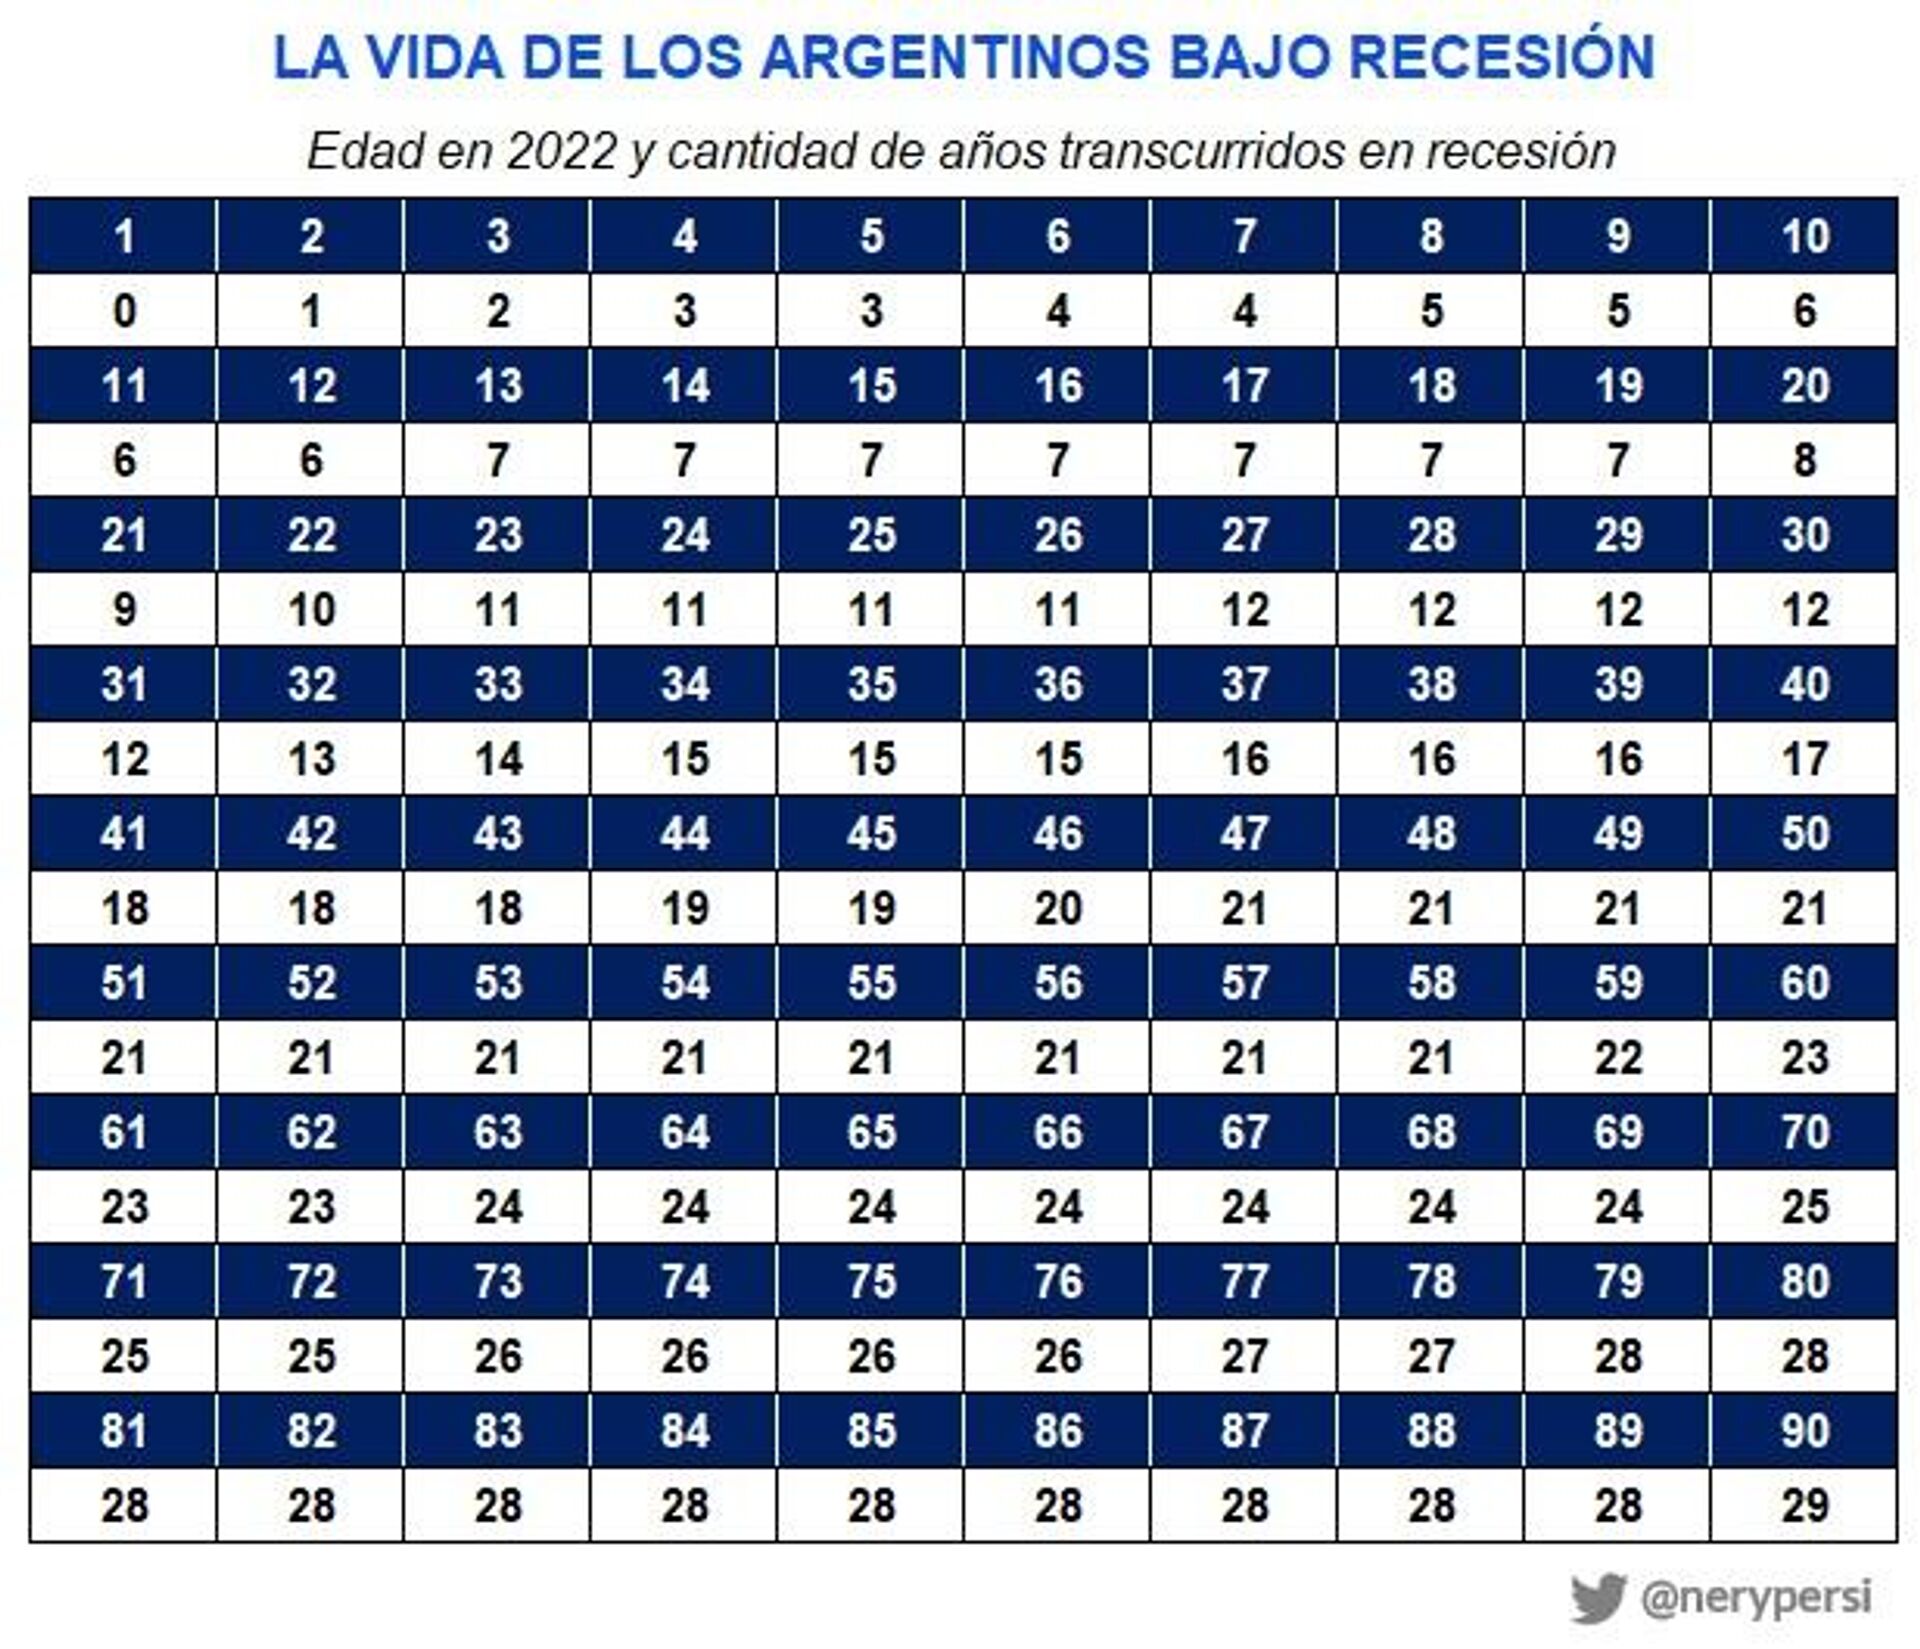 Tabla 'La vida de los argentinos bajo recesión' en porcentaje, elaborada por el economista Nery Persichini - Sputnik Mundo, 1920, 24.01.2022